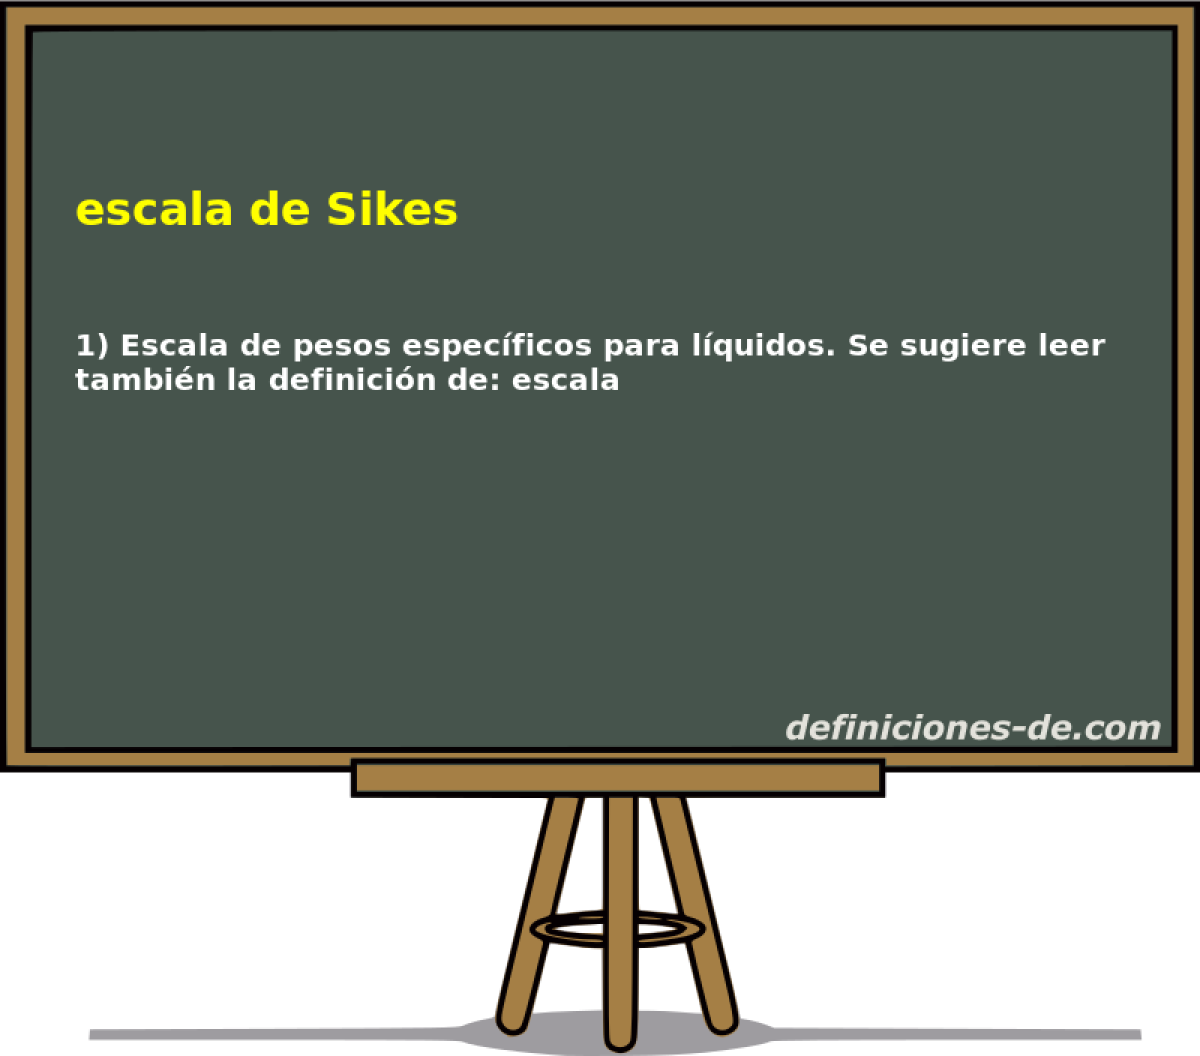 escala de Sikes 